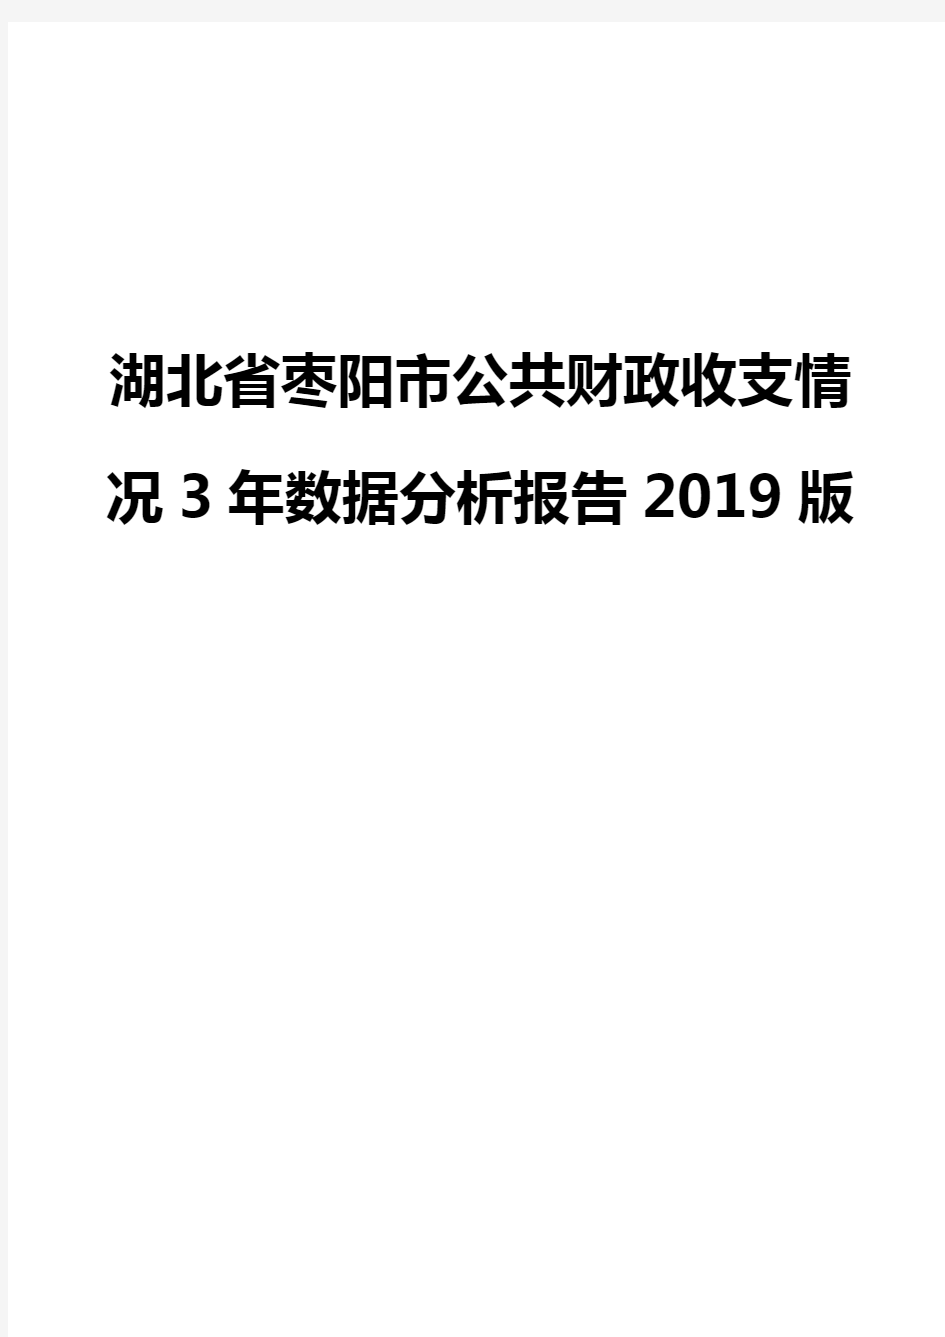 湖北省枣阳市公共财政收支情况3年数据分析报告2019版